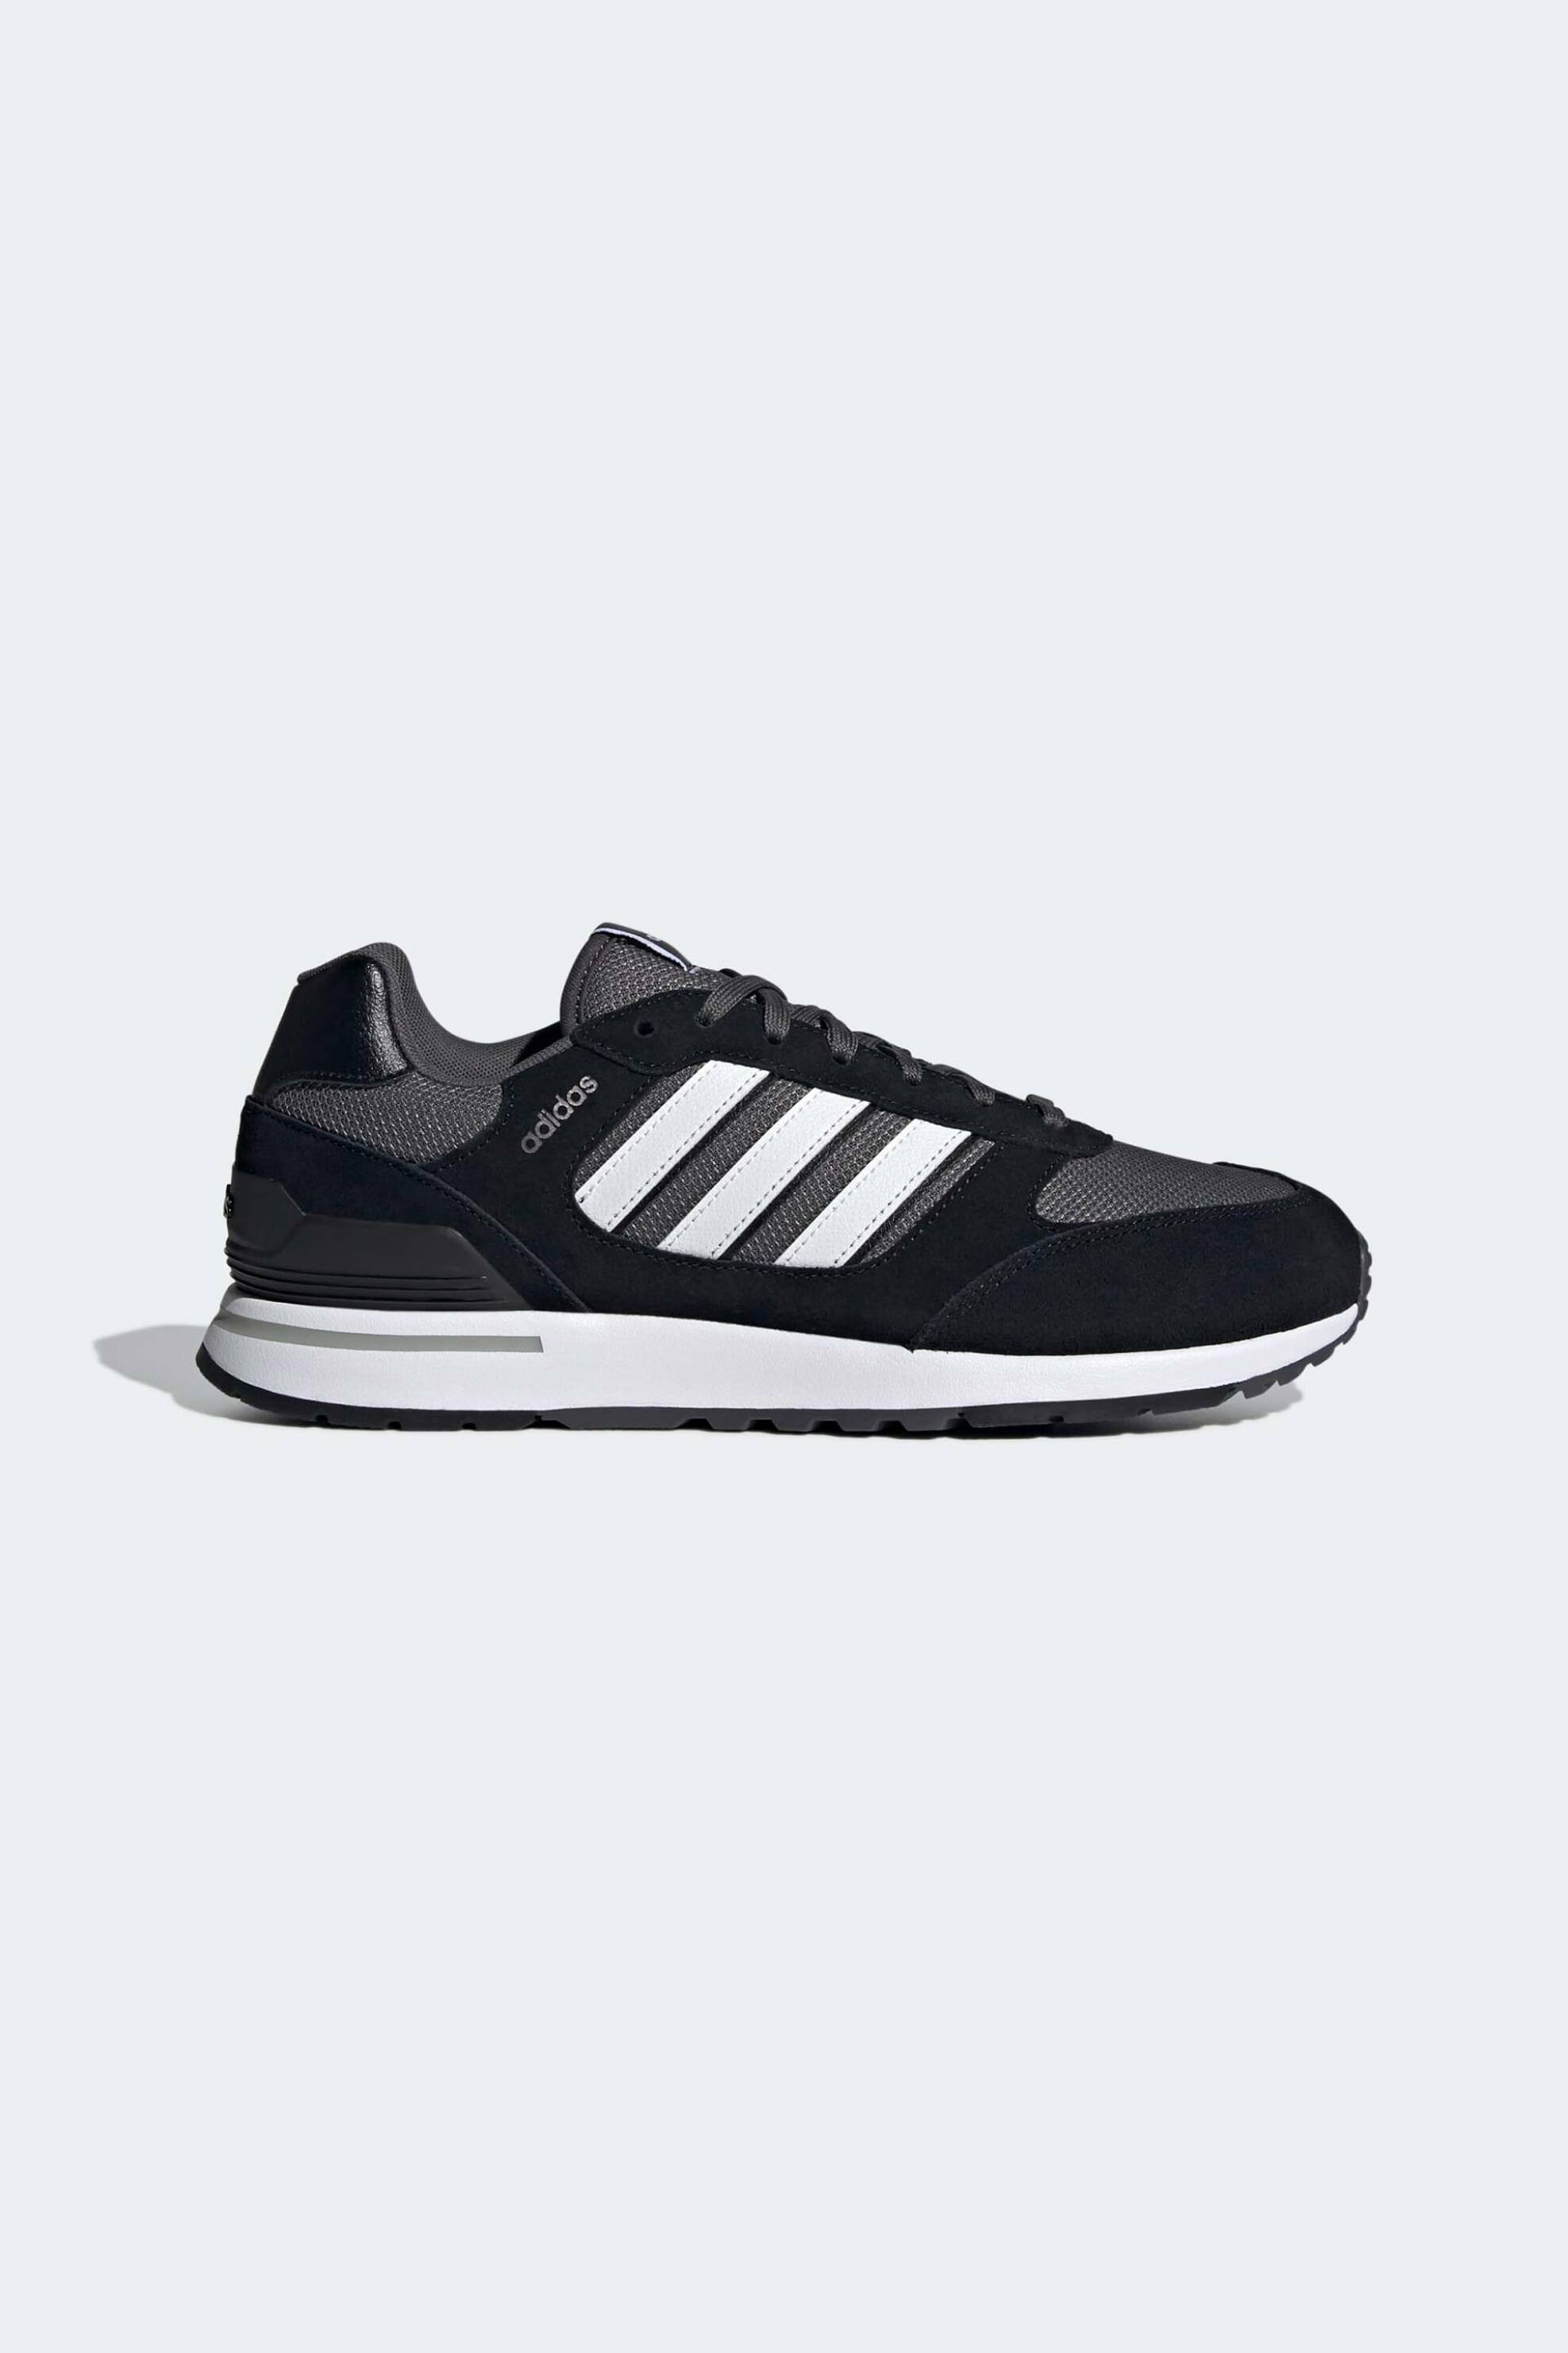 Ανδρική Μόδα > Ανδρικά Αθλητικά > Ανδρικά Αθλητικά Παπούτσια > Ανδρικά Αθλητικά Παπούτσια για Τρέξιμο Adidas ανδρικά αθλητικά παπούτσια "Run 80s" - GV7302 Μαύρο